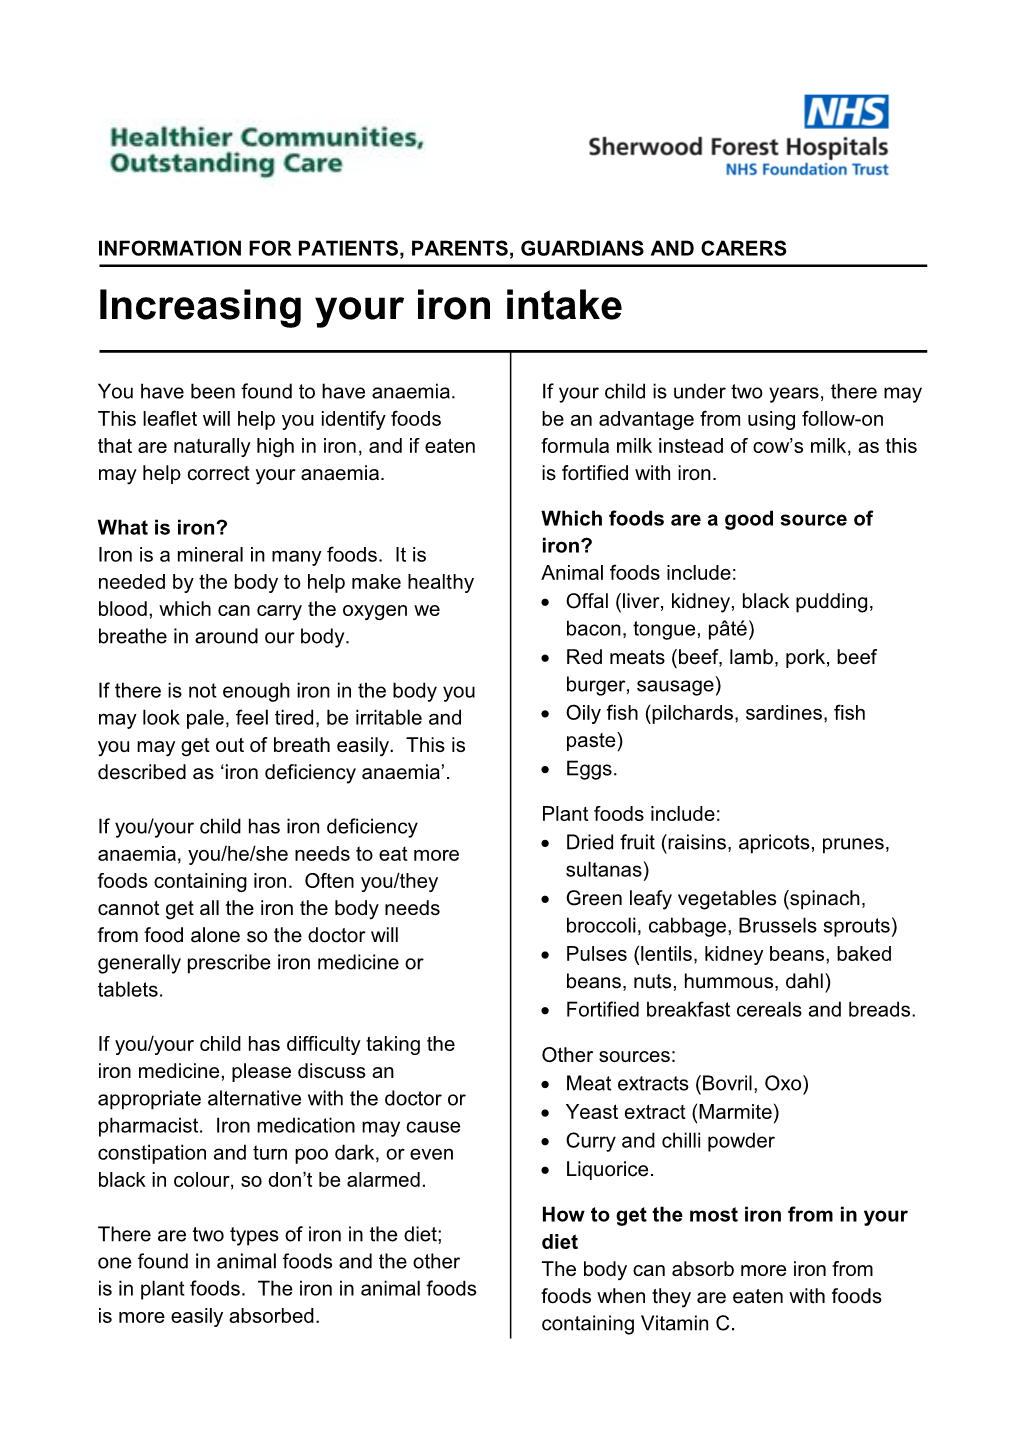 Increasing Your Iron Intake